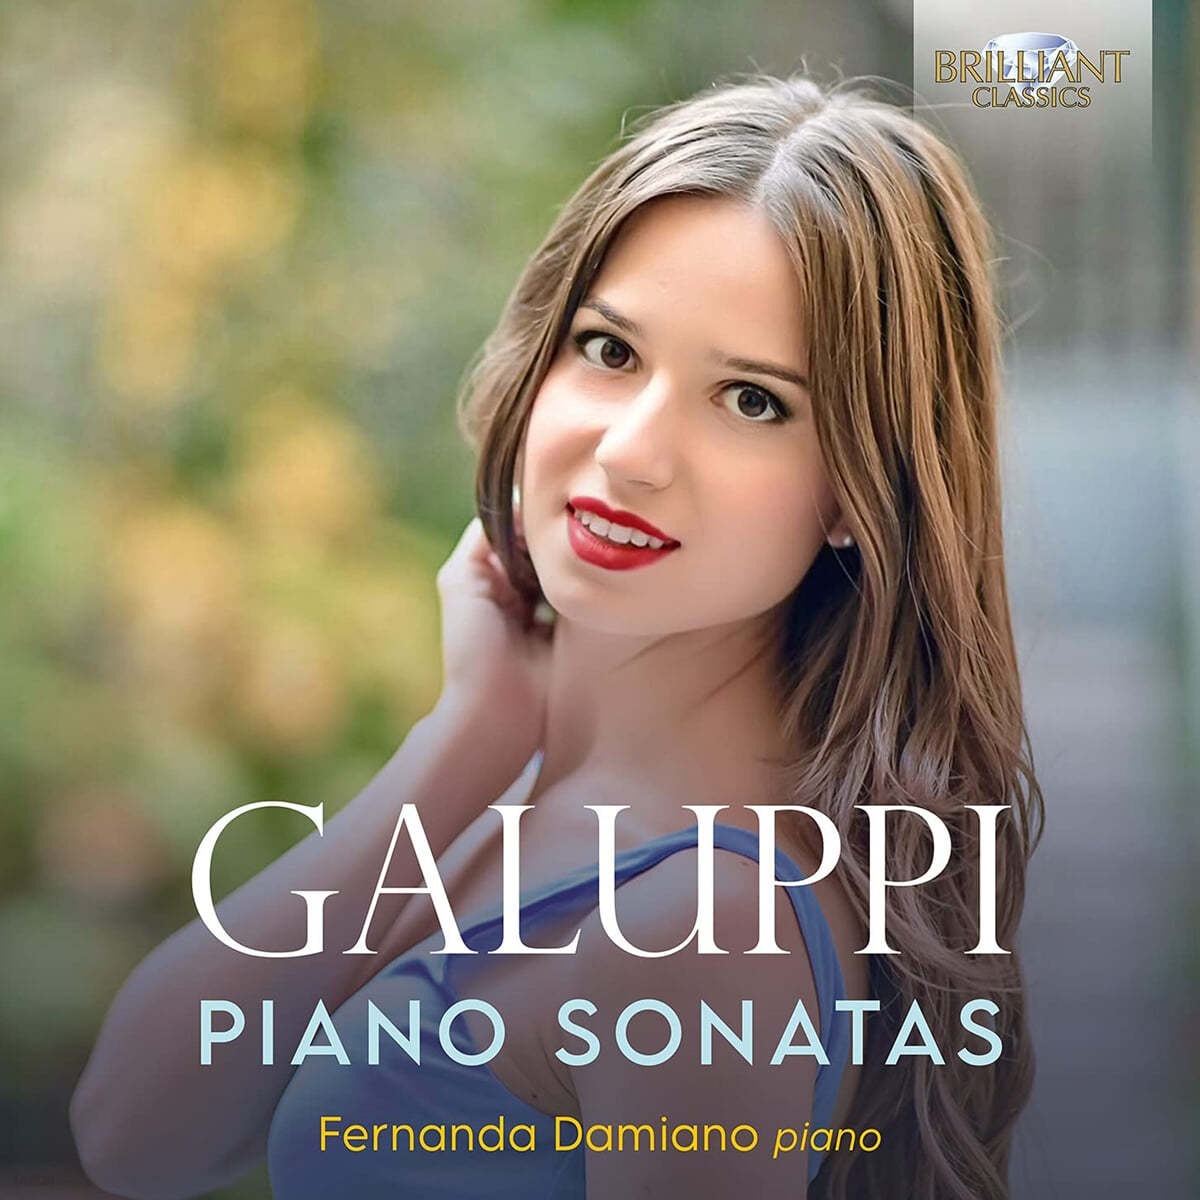 Fernanda Damiano 발다사레 갈루피: 피아노 소나타 (Baldassare Galuppi: Piano Sonatas) 